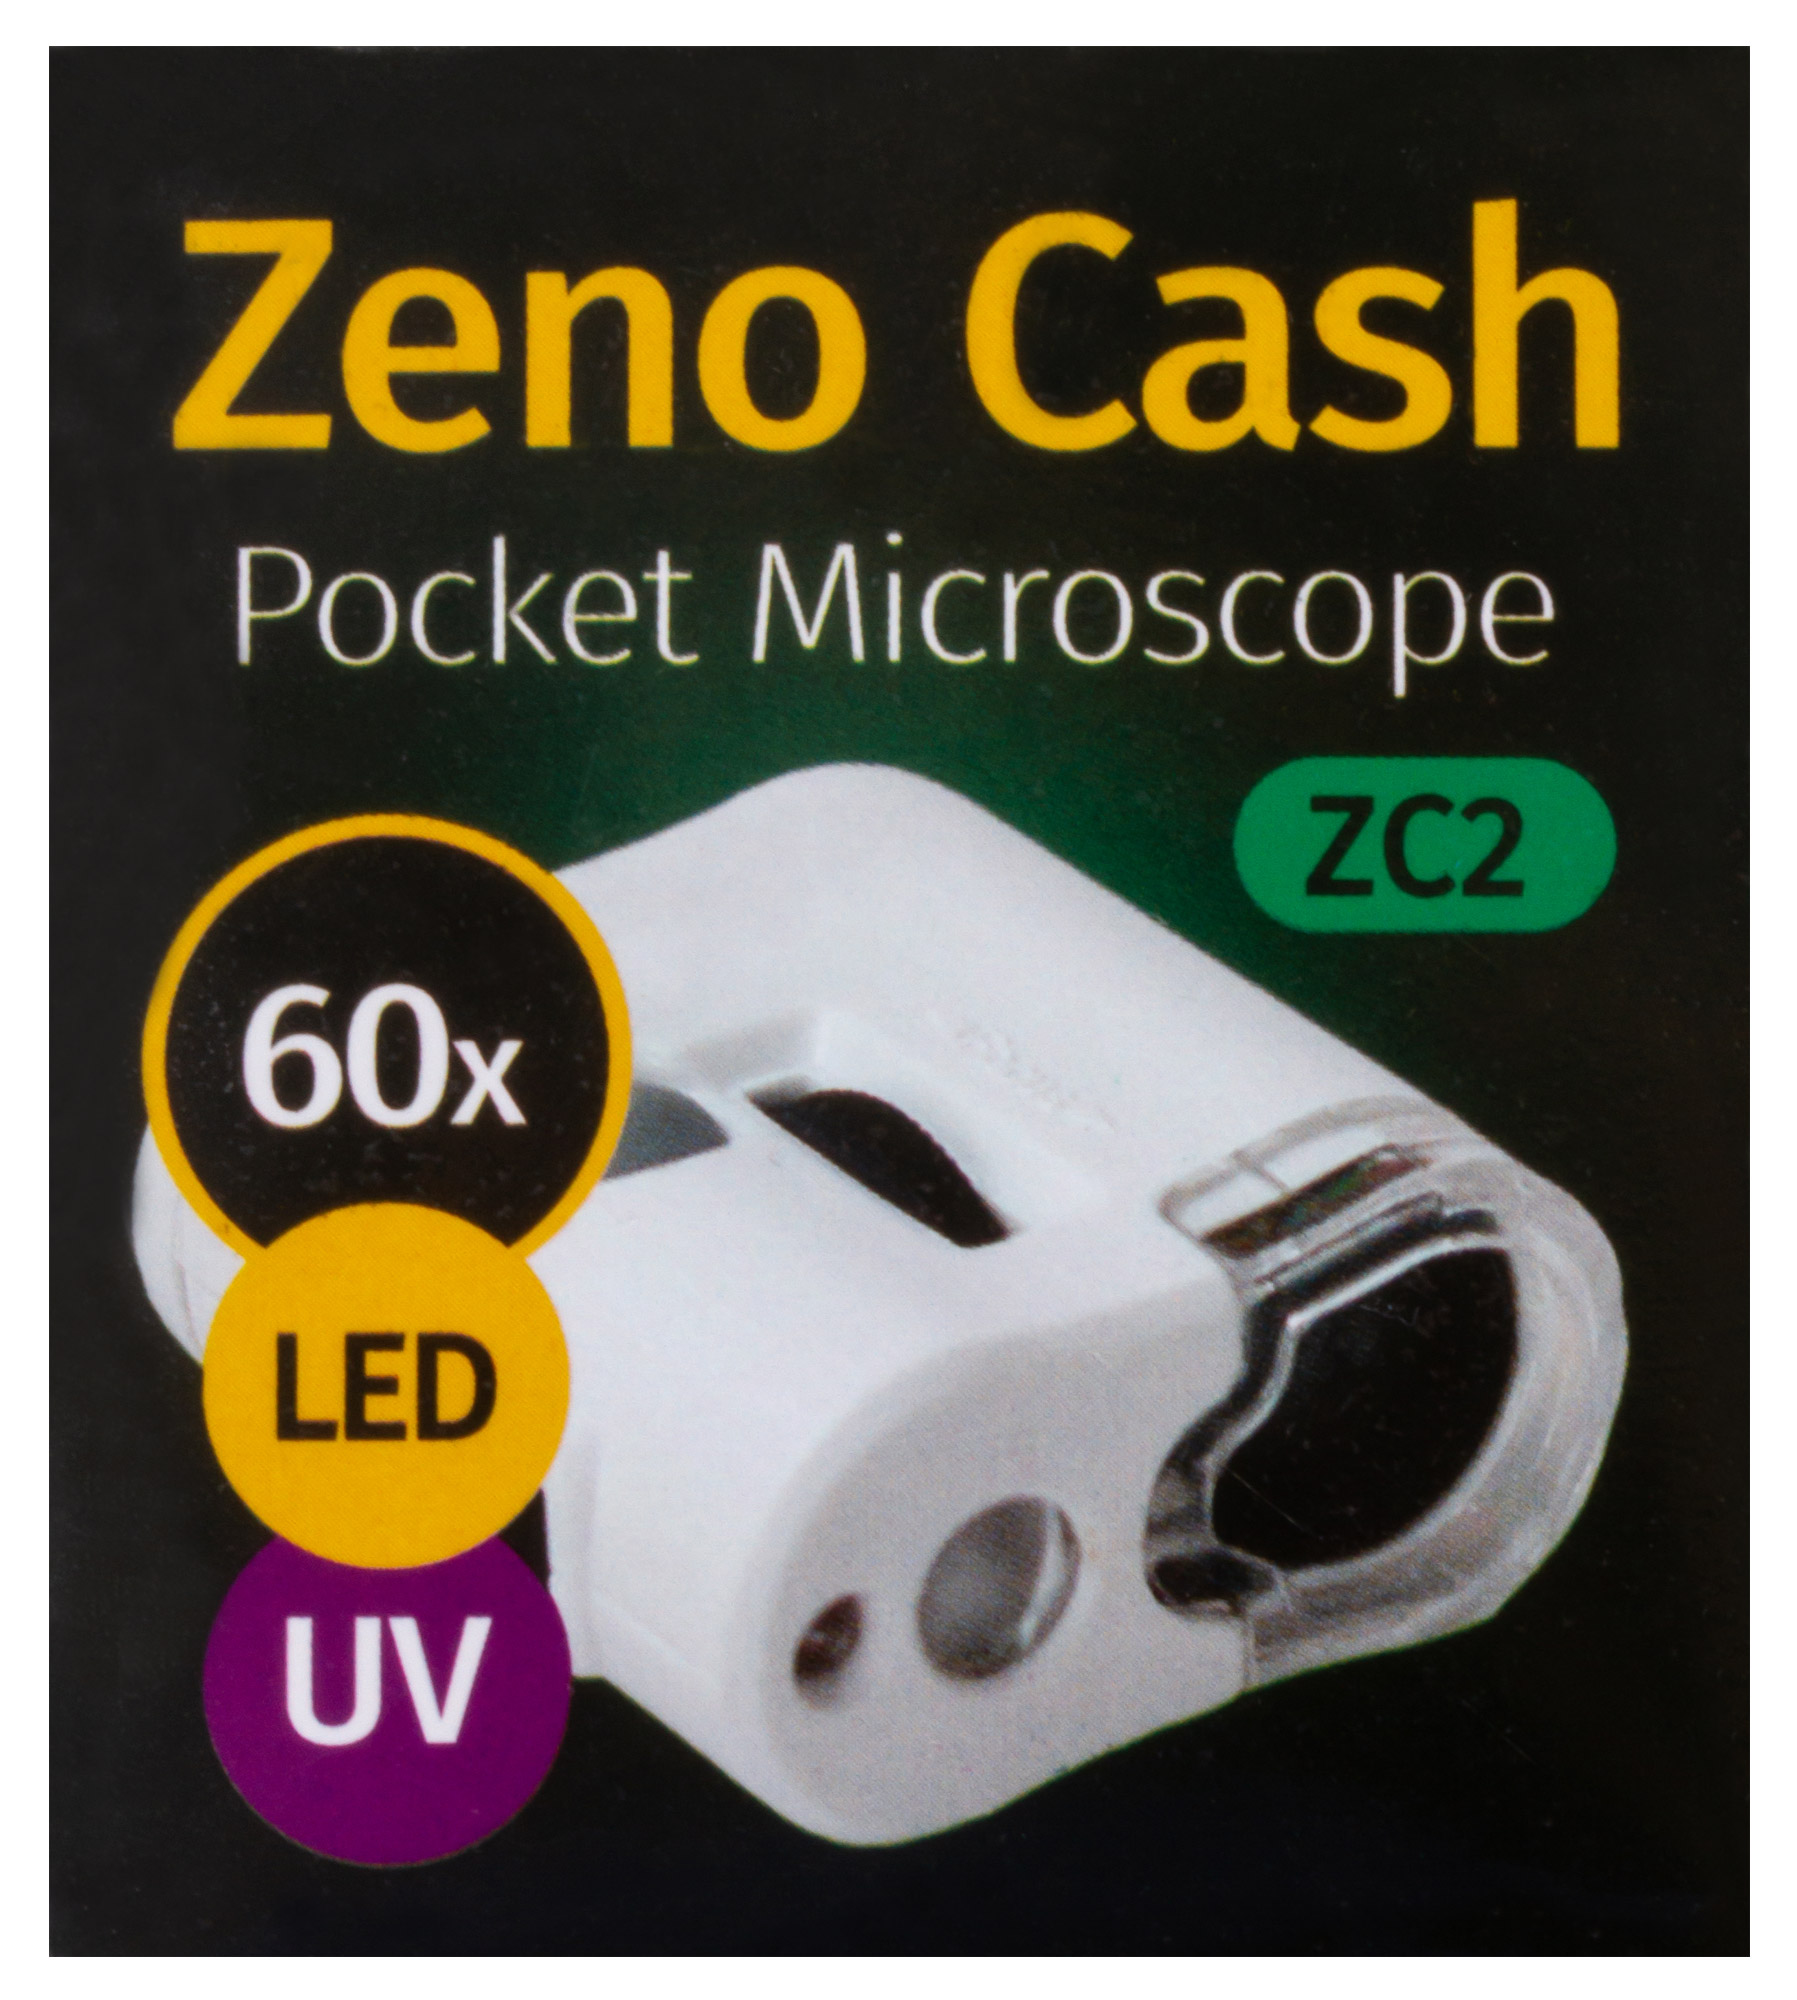  Микроскоп карманный для проверки денег Levenhuk Zeno Cash ZC2